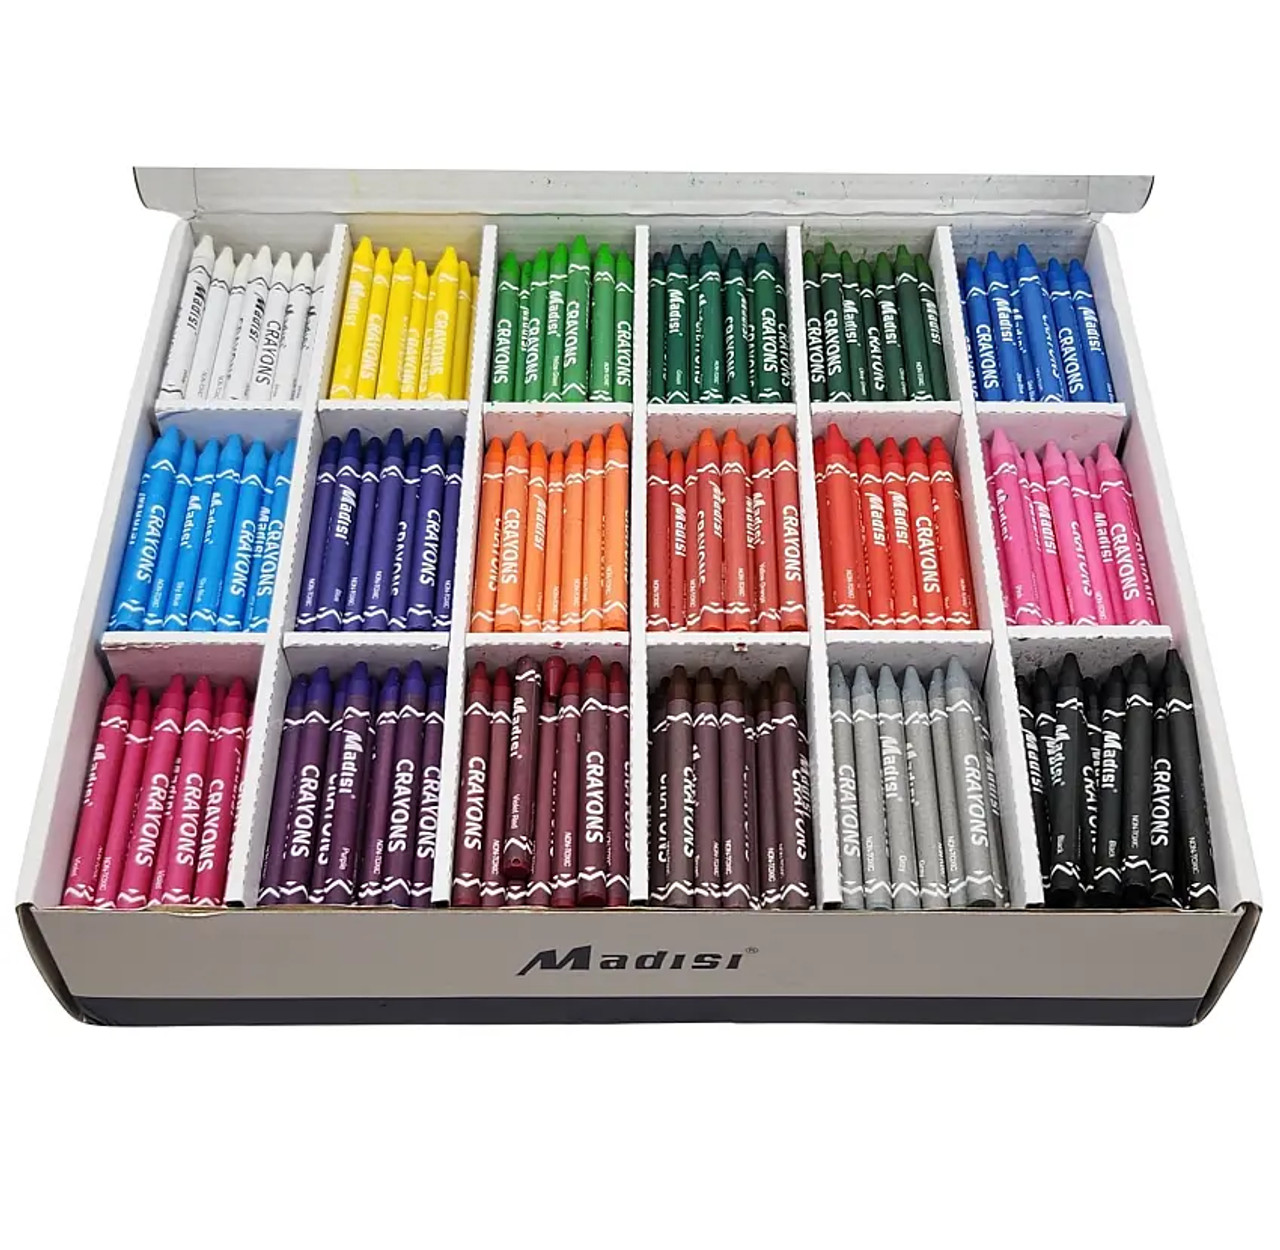 Big Box O Crayons - Sashing - Pantograph